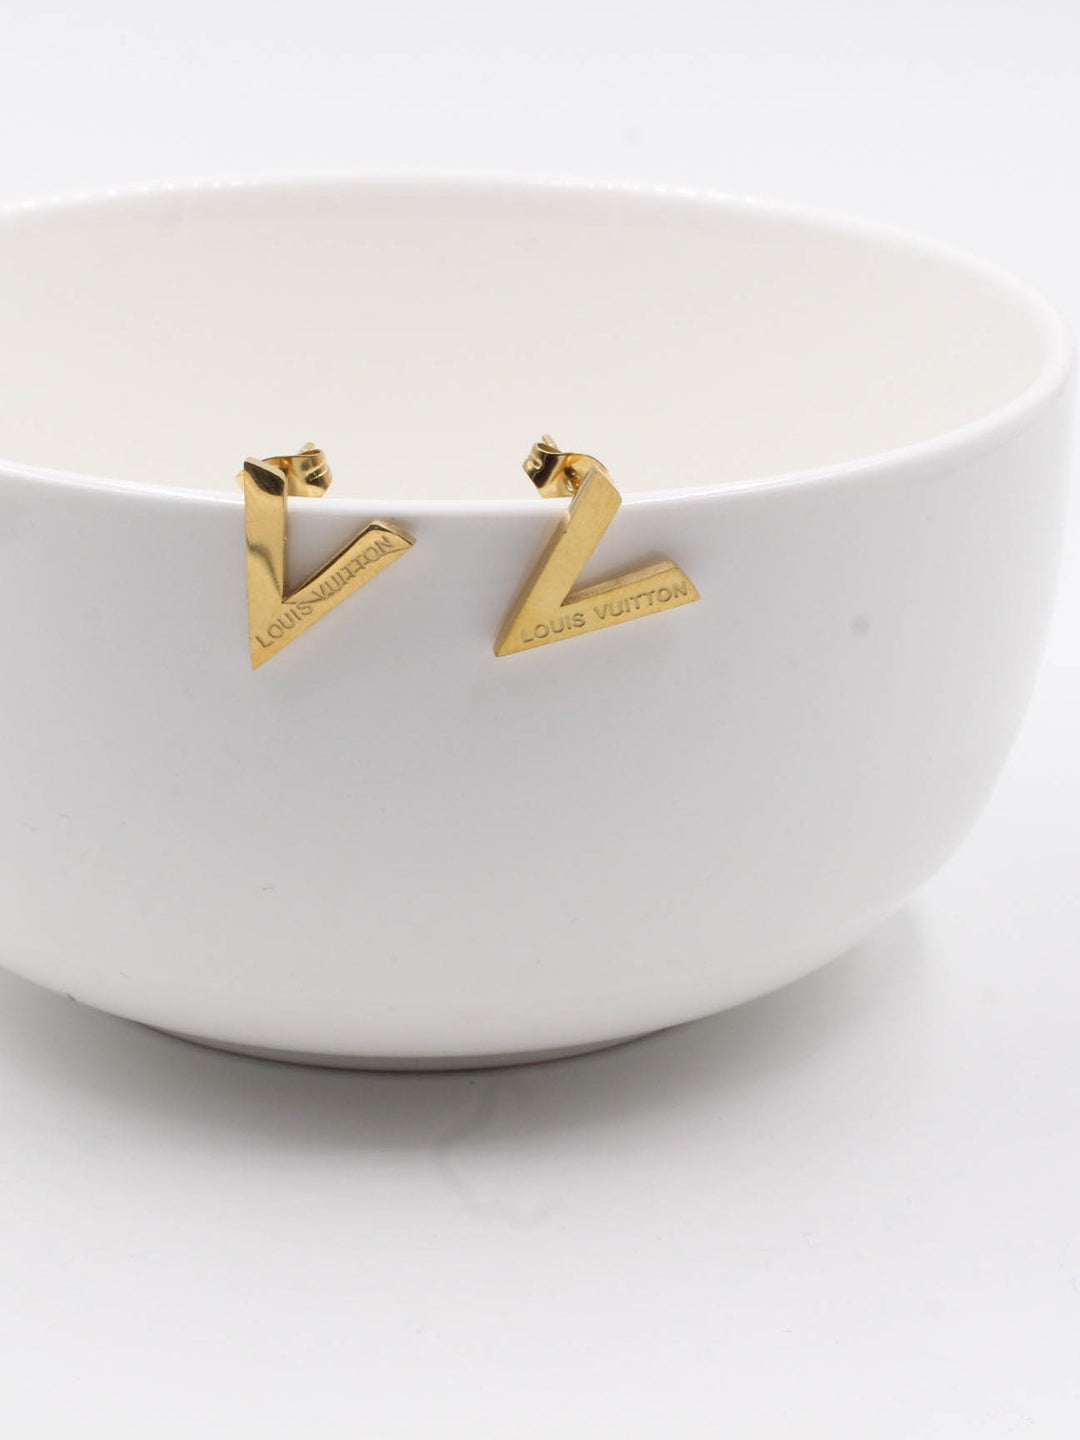 earring brand Louis Vuitton - حلق ماركة لويس فيتون  - Jewel